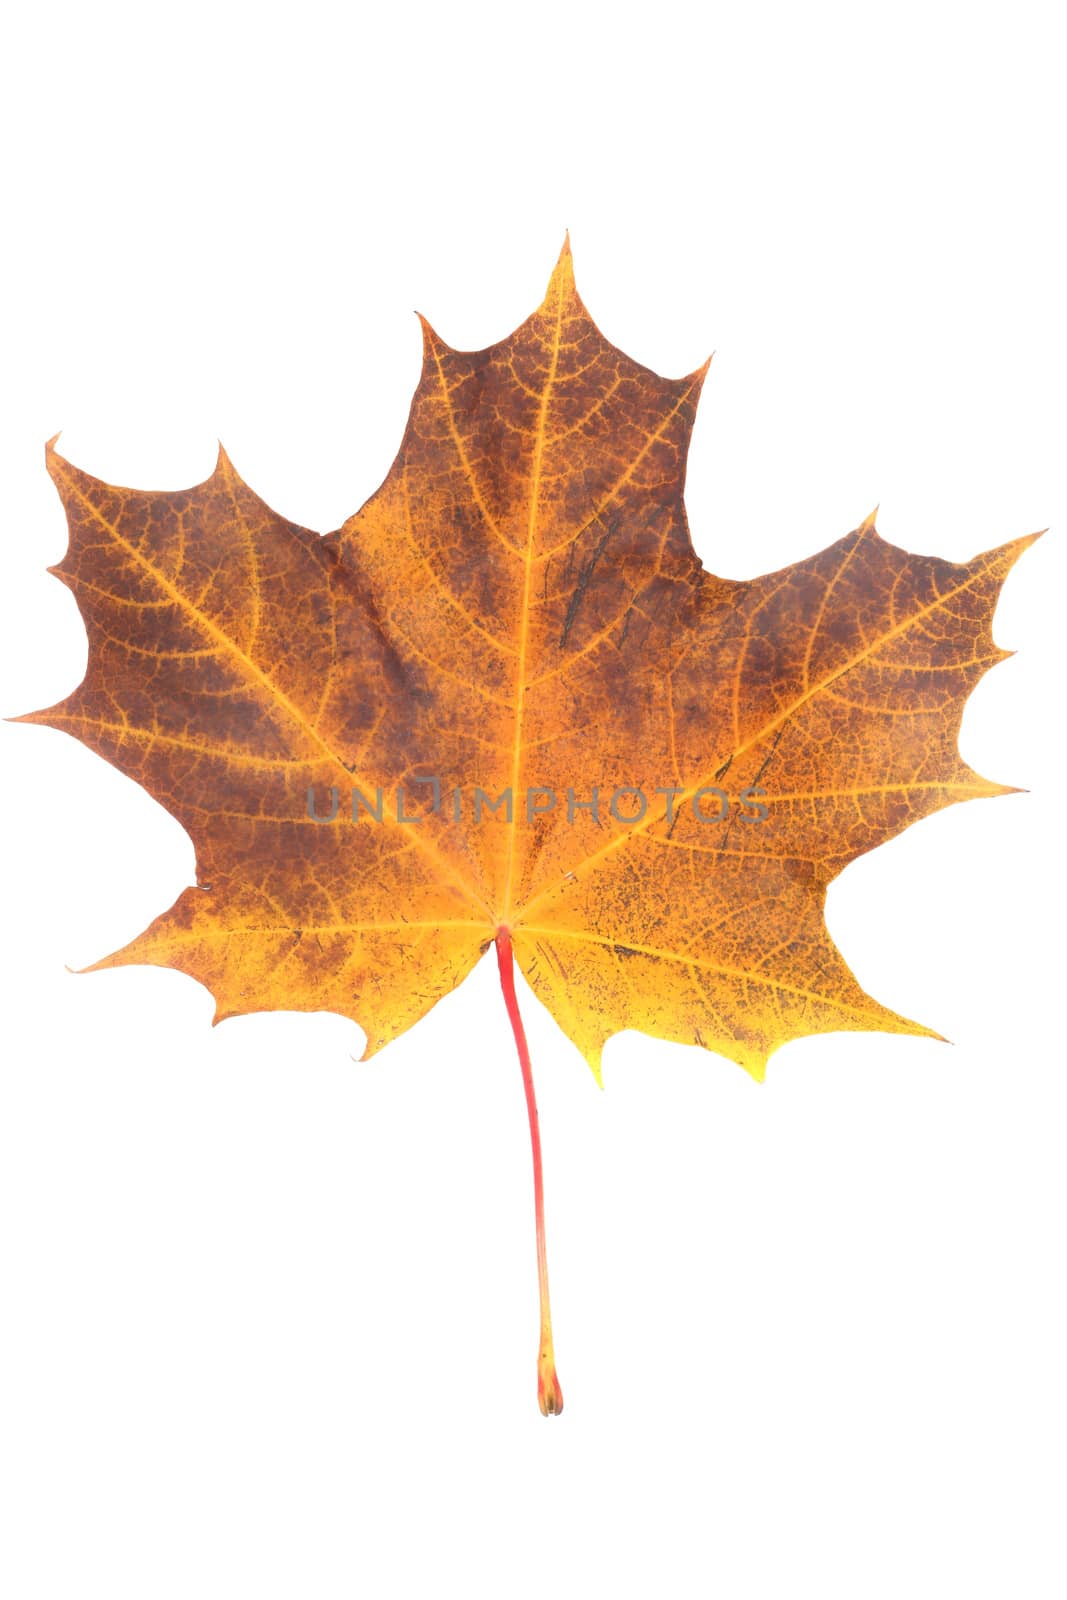 One orange autumn dry maple leaf isolated on white background